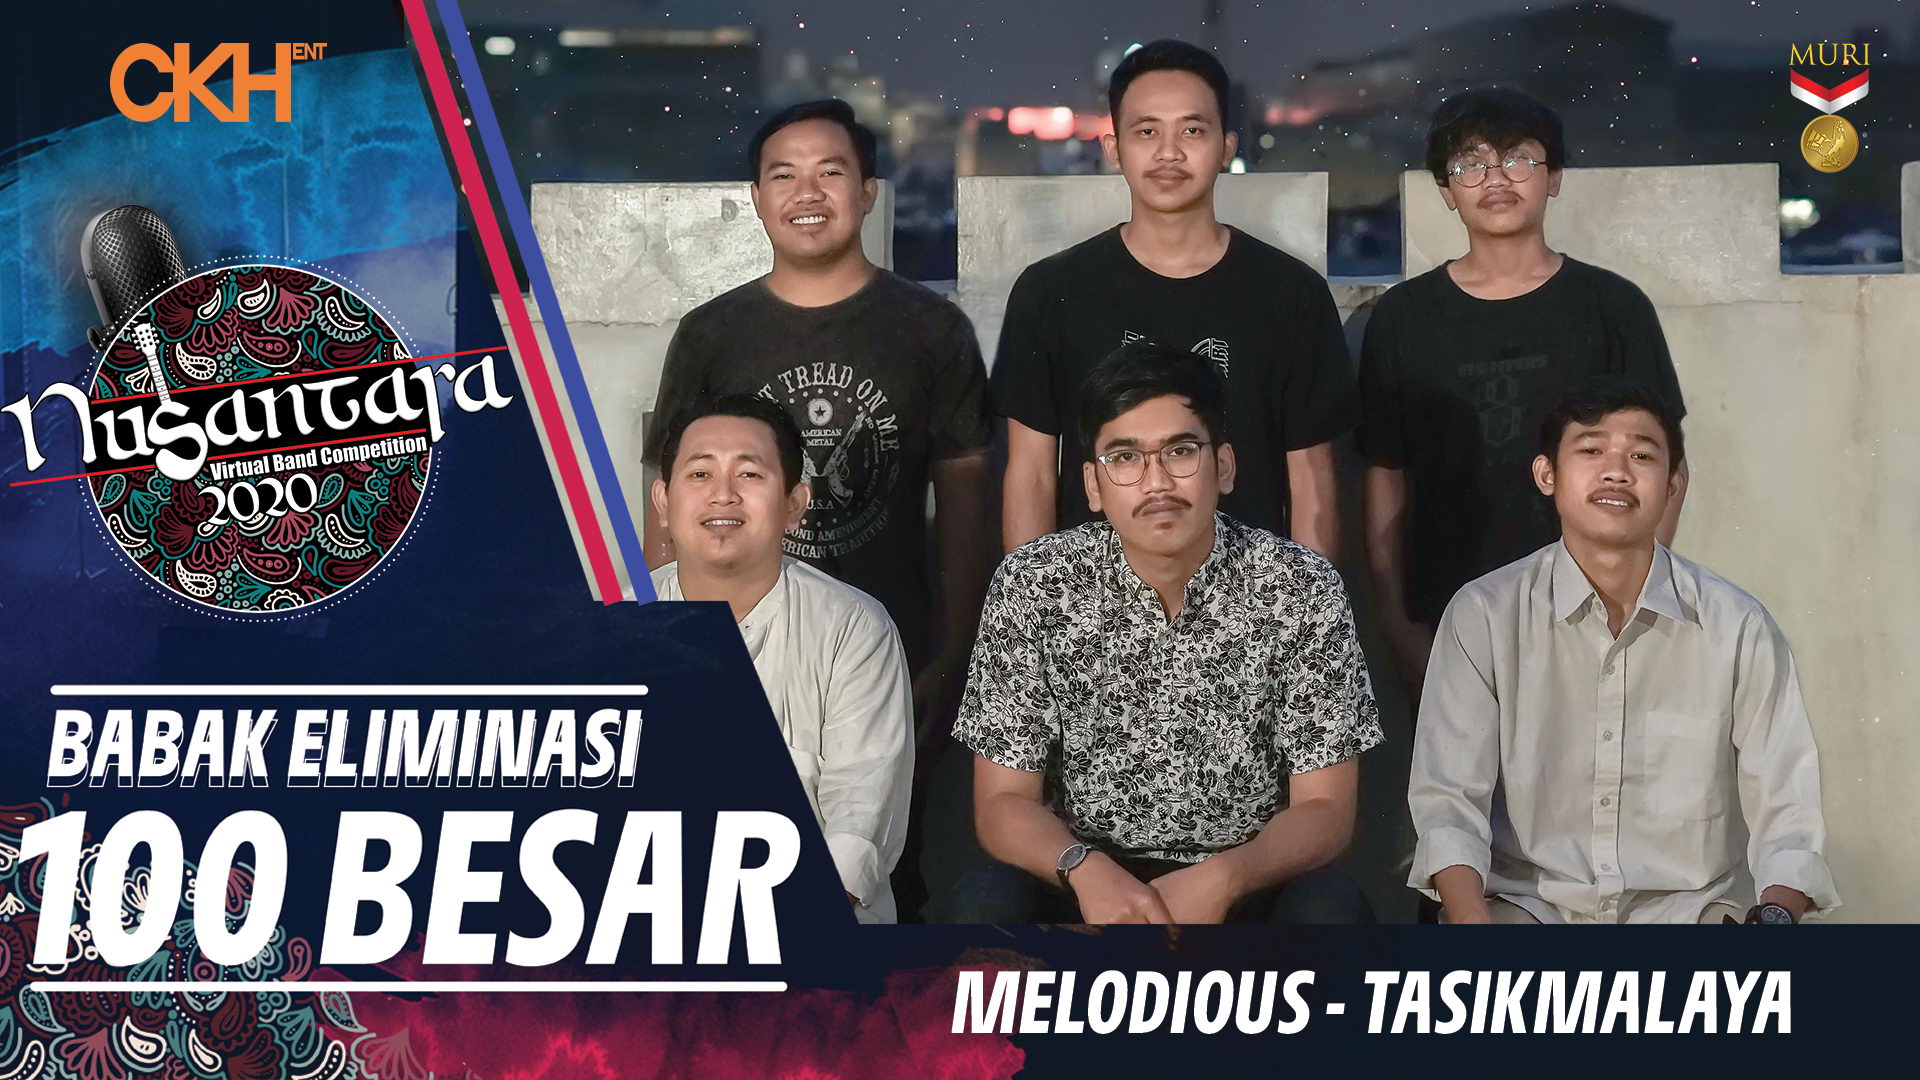 Melodious - Eliminasi 100 Besar Nusantara Virtual Band Competition